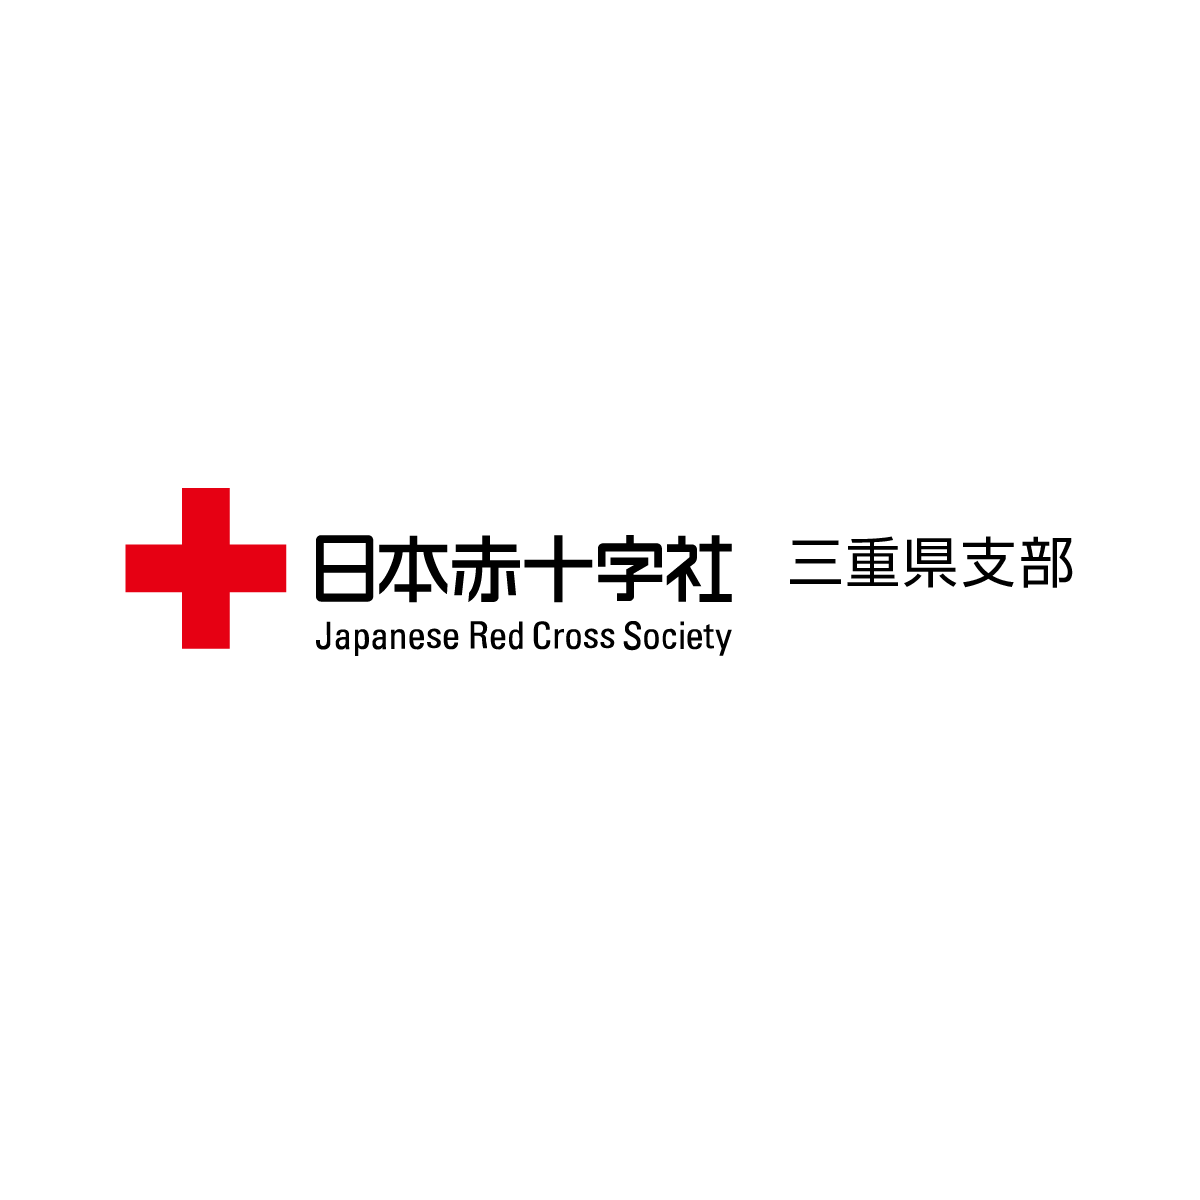 リンク 著作権について 日本赤十字社 三重県支部